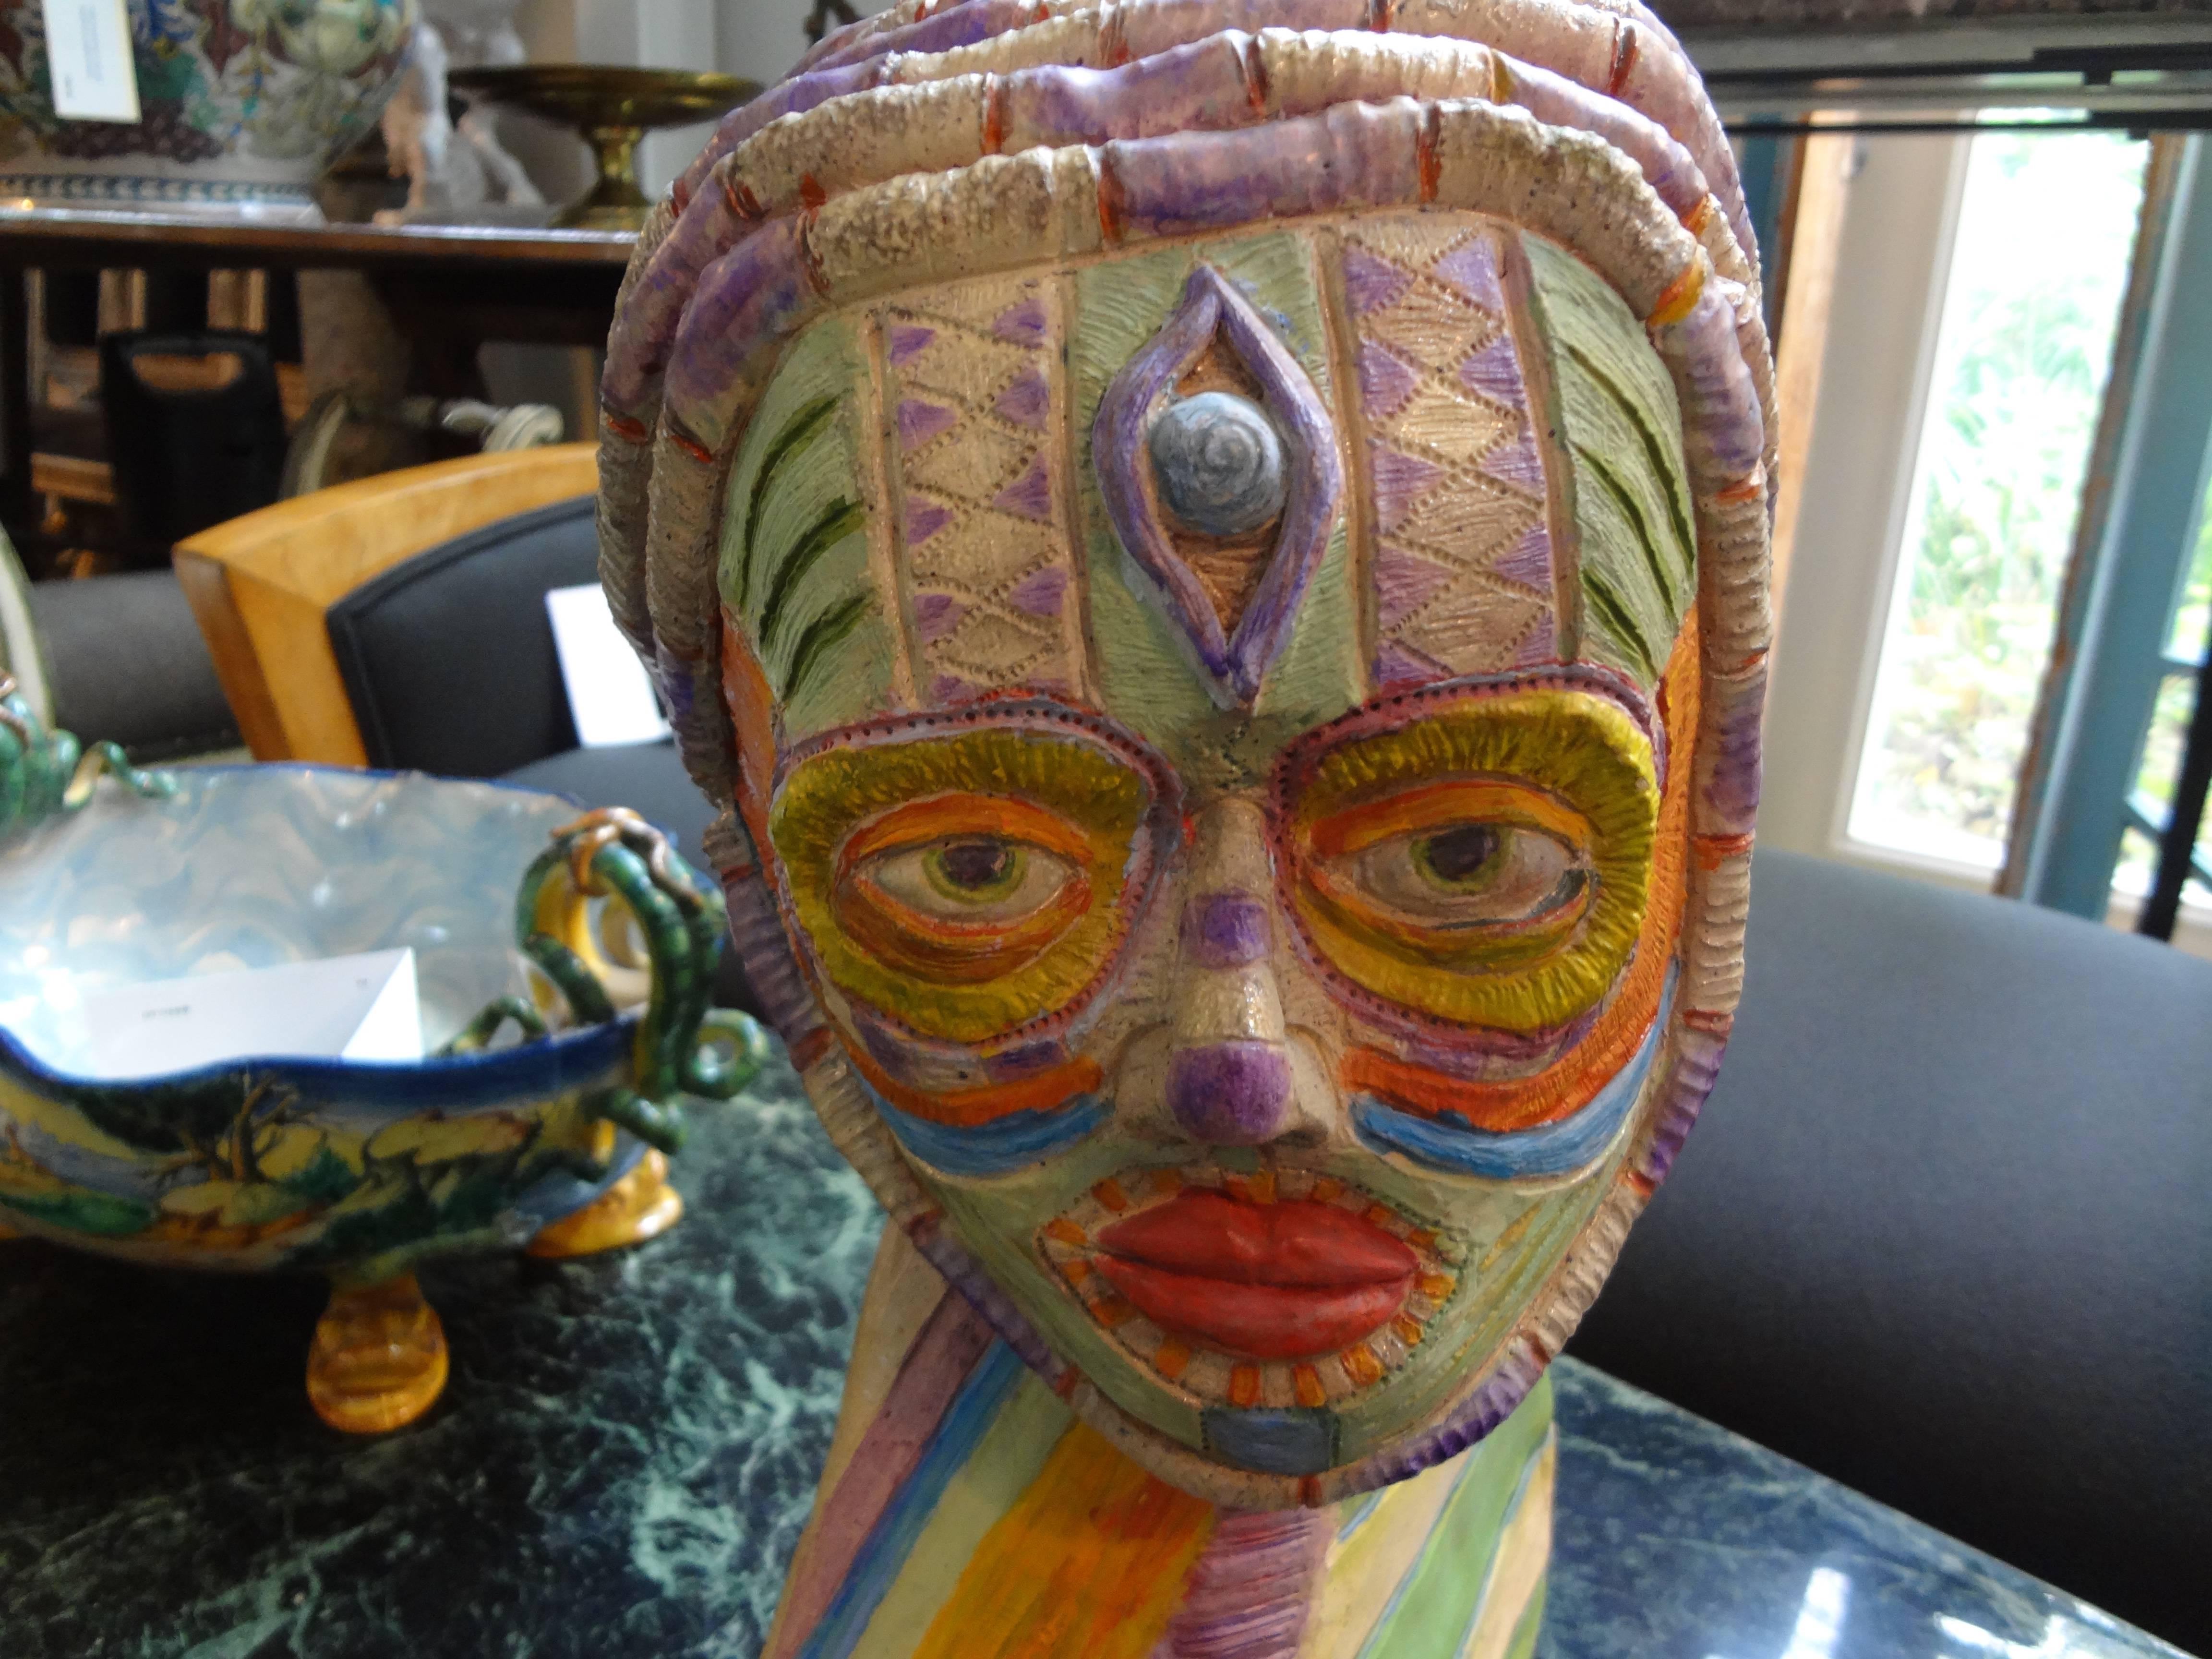 Skulptur einer Tonbüste im Stammesstil.
Ungewöhnliche Künstlerbüste aus Ton im afrikanischen Stammesstil aus dem 20. Jahrhundert. Diese einzigartige farbenfrohe Künstlerskulptur stellt eine Stammesfigur dar.